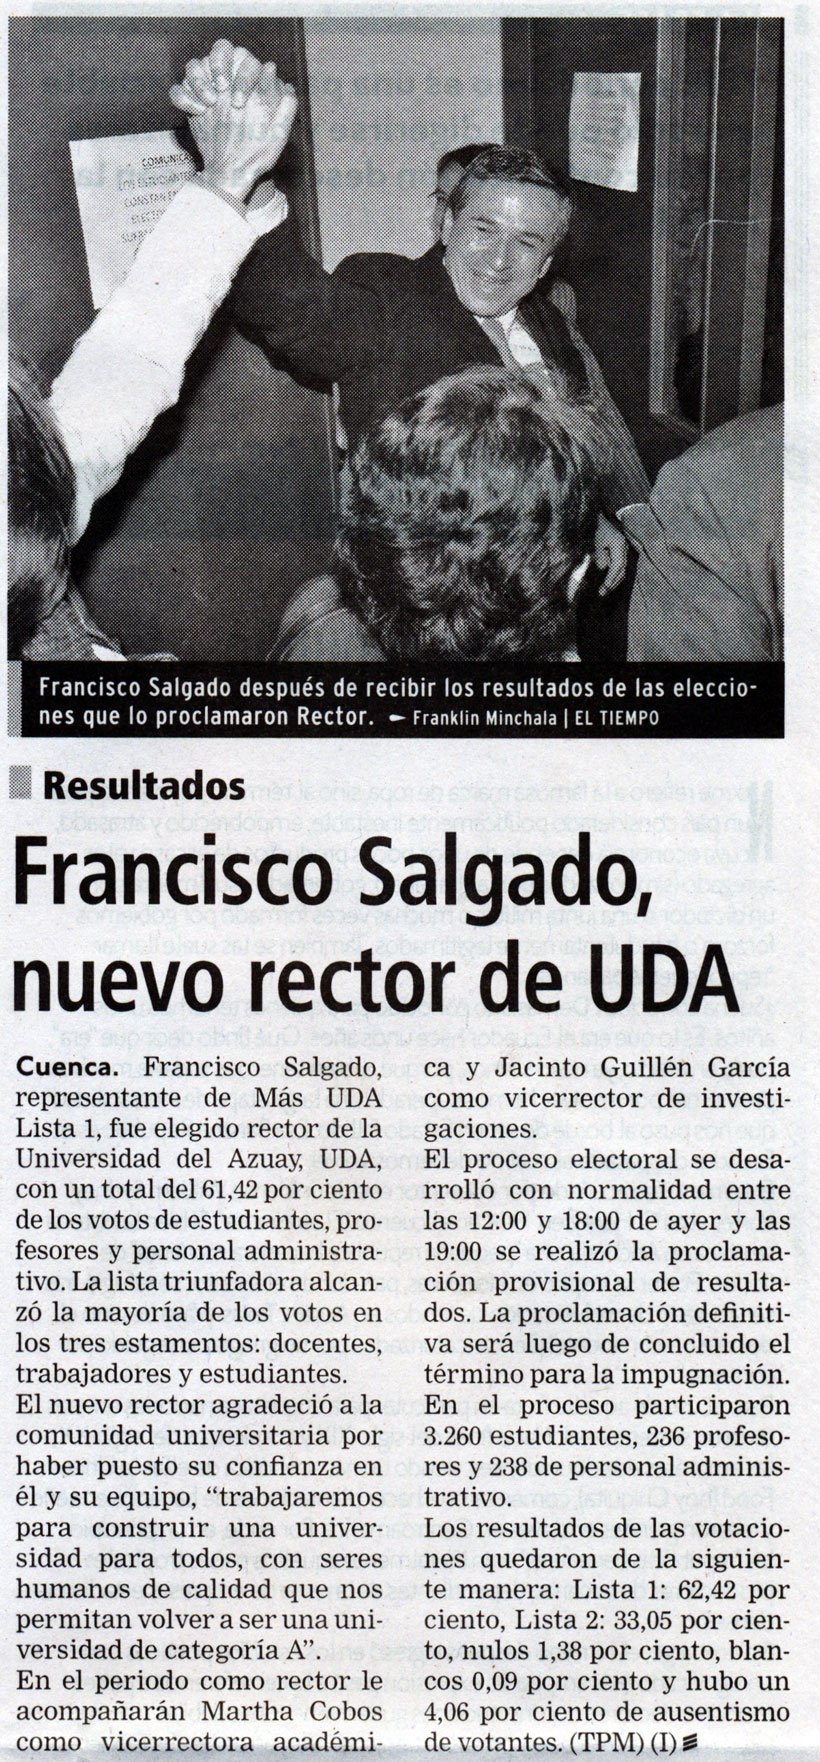 Francisco Salgado, nuevo rector de UDA